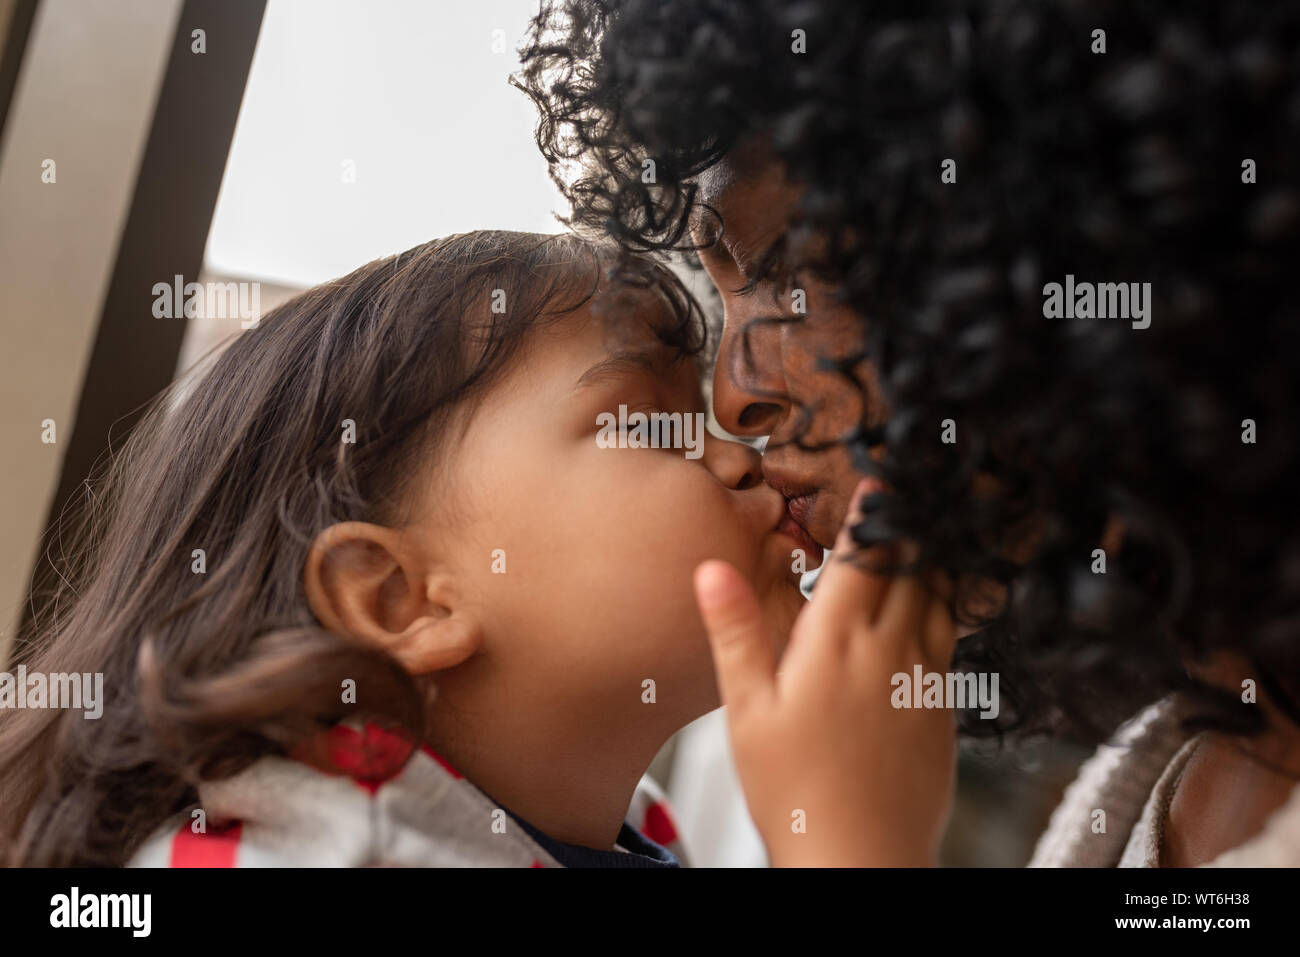 Adorable kleine Mädchen ihre Mutter einen Kuss zu geben Stockfoto